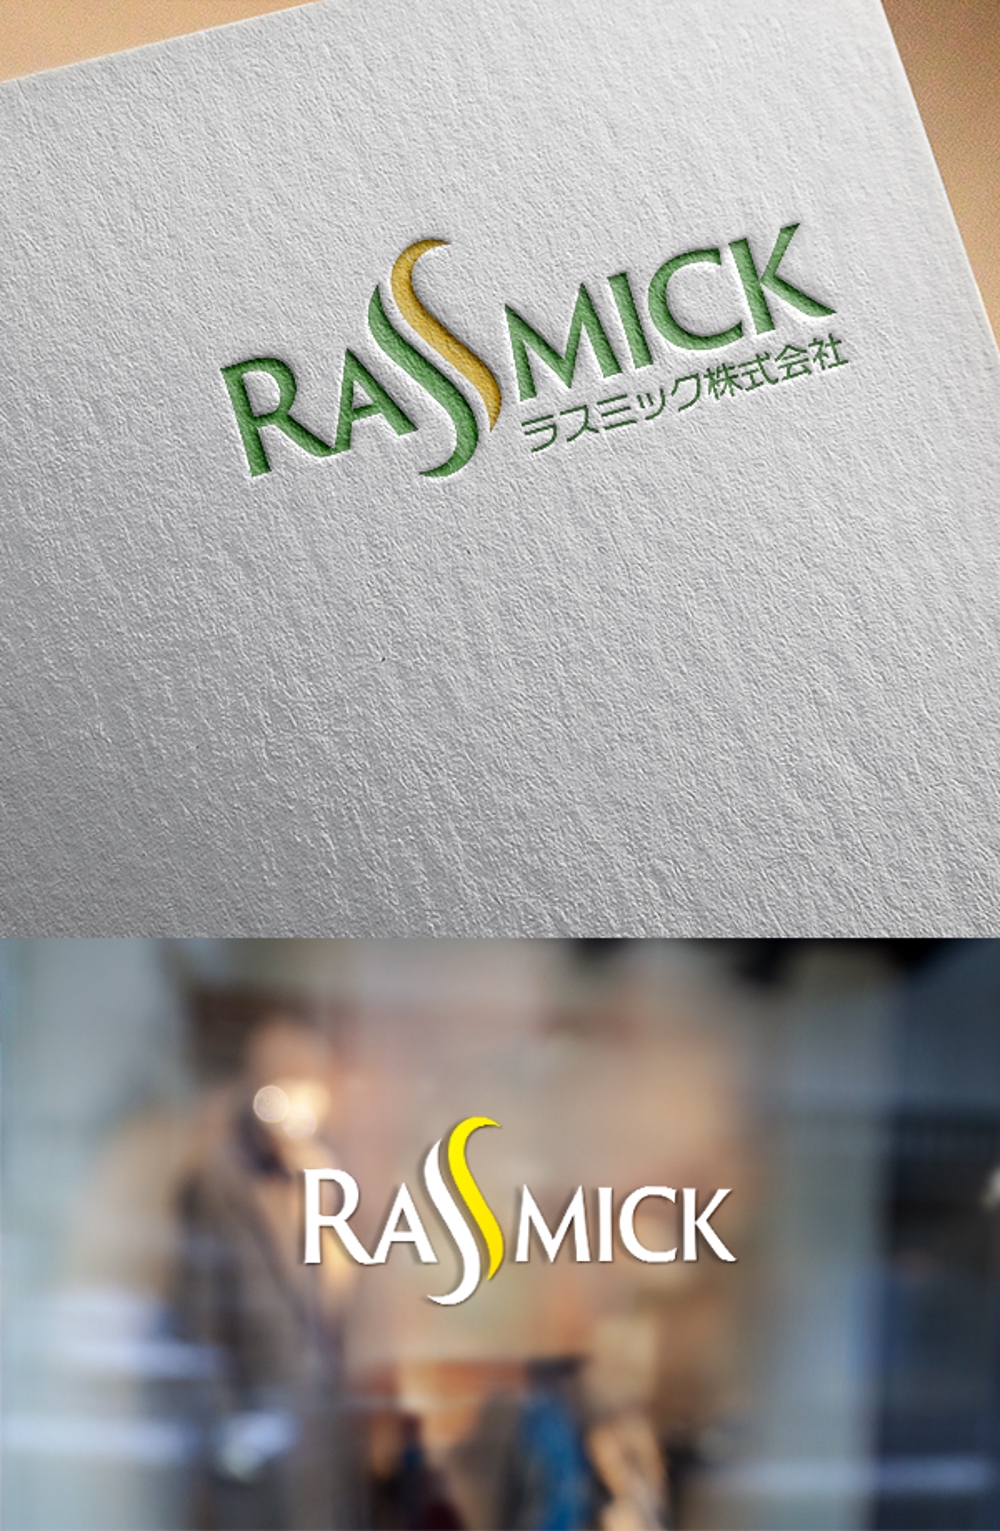 ドッグフード　ペット用品　メーカー　「ラスミック株式会社」(Rassmick)のロゴ